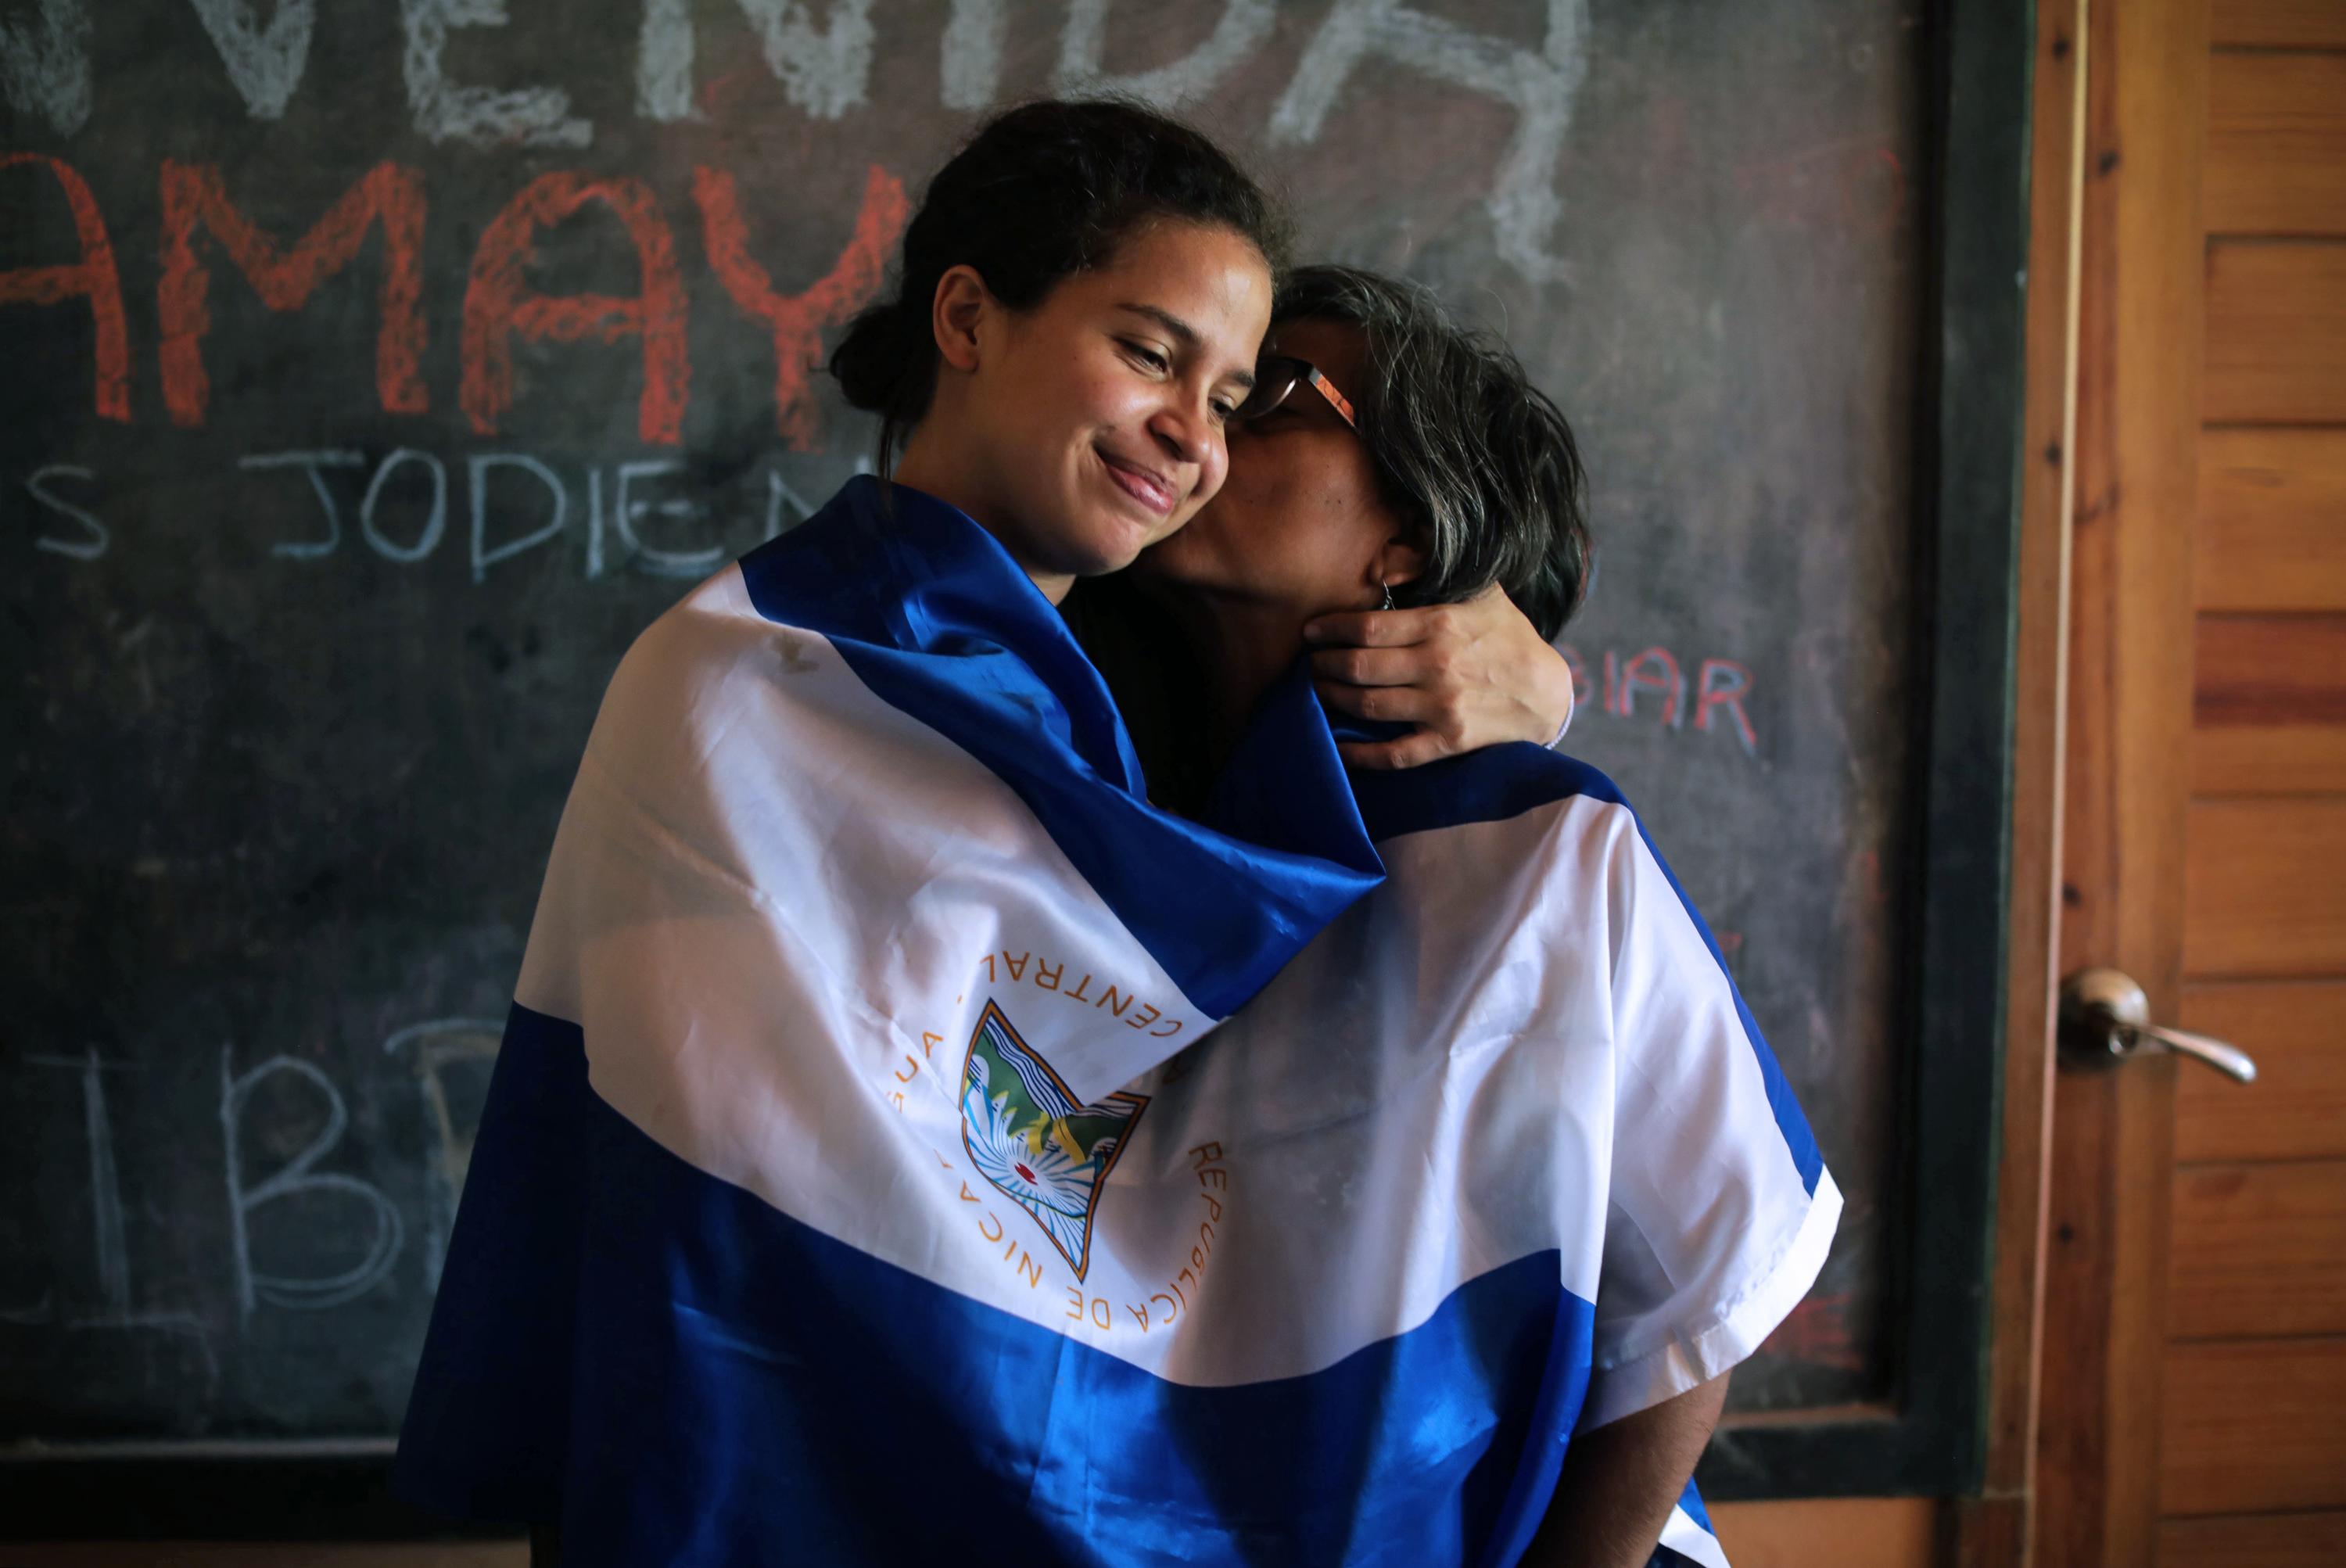 La líder estudiantil Amaya Coppens (izquierda) es recibida por su madre, Tamara Zamora, en su casa de Estelí, a  150 km de Managua, el 30 de diciembre de 2019. Coppens fue excarcelada de la prisión El Chipote. Foto de Inti Ocon / AFP)